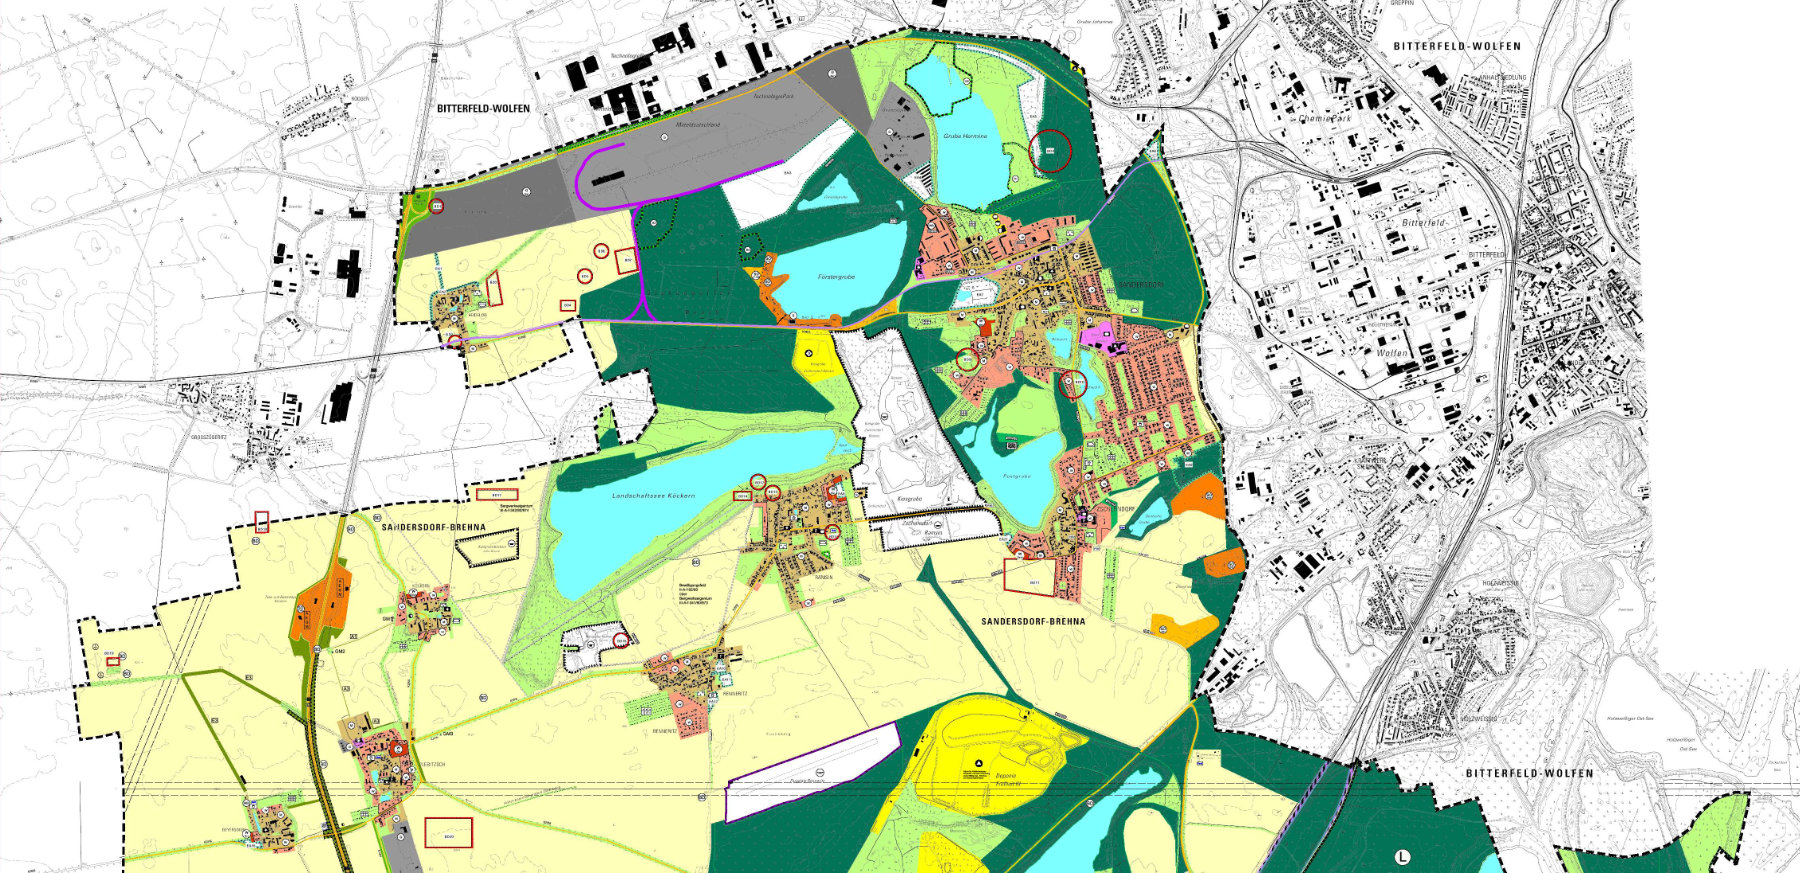 Neuaufstellung des Flächennutzungsplanes der Stadt Sandersdorf-Brehna